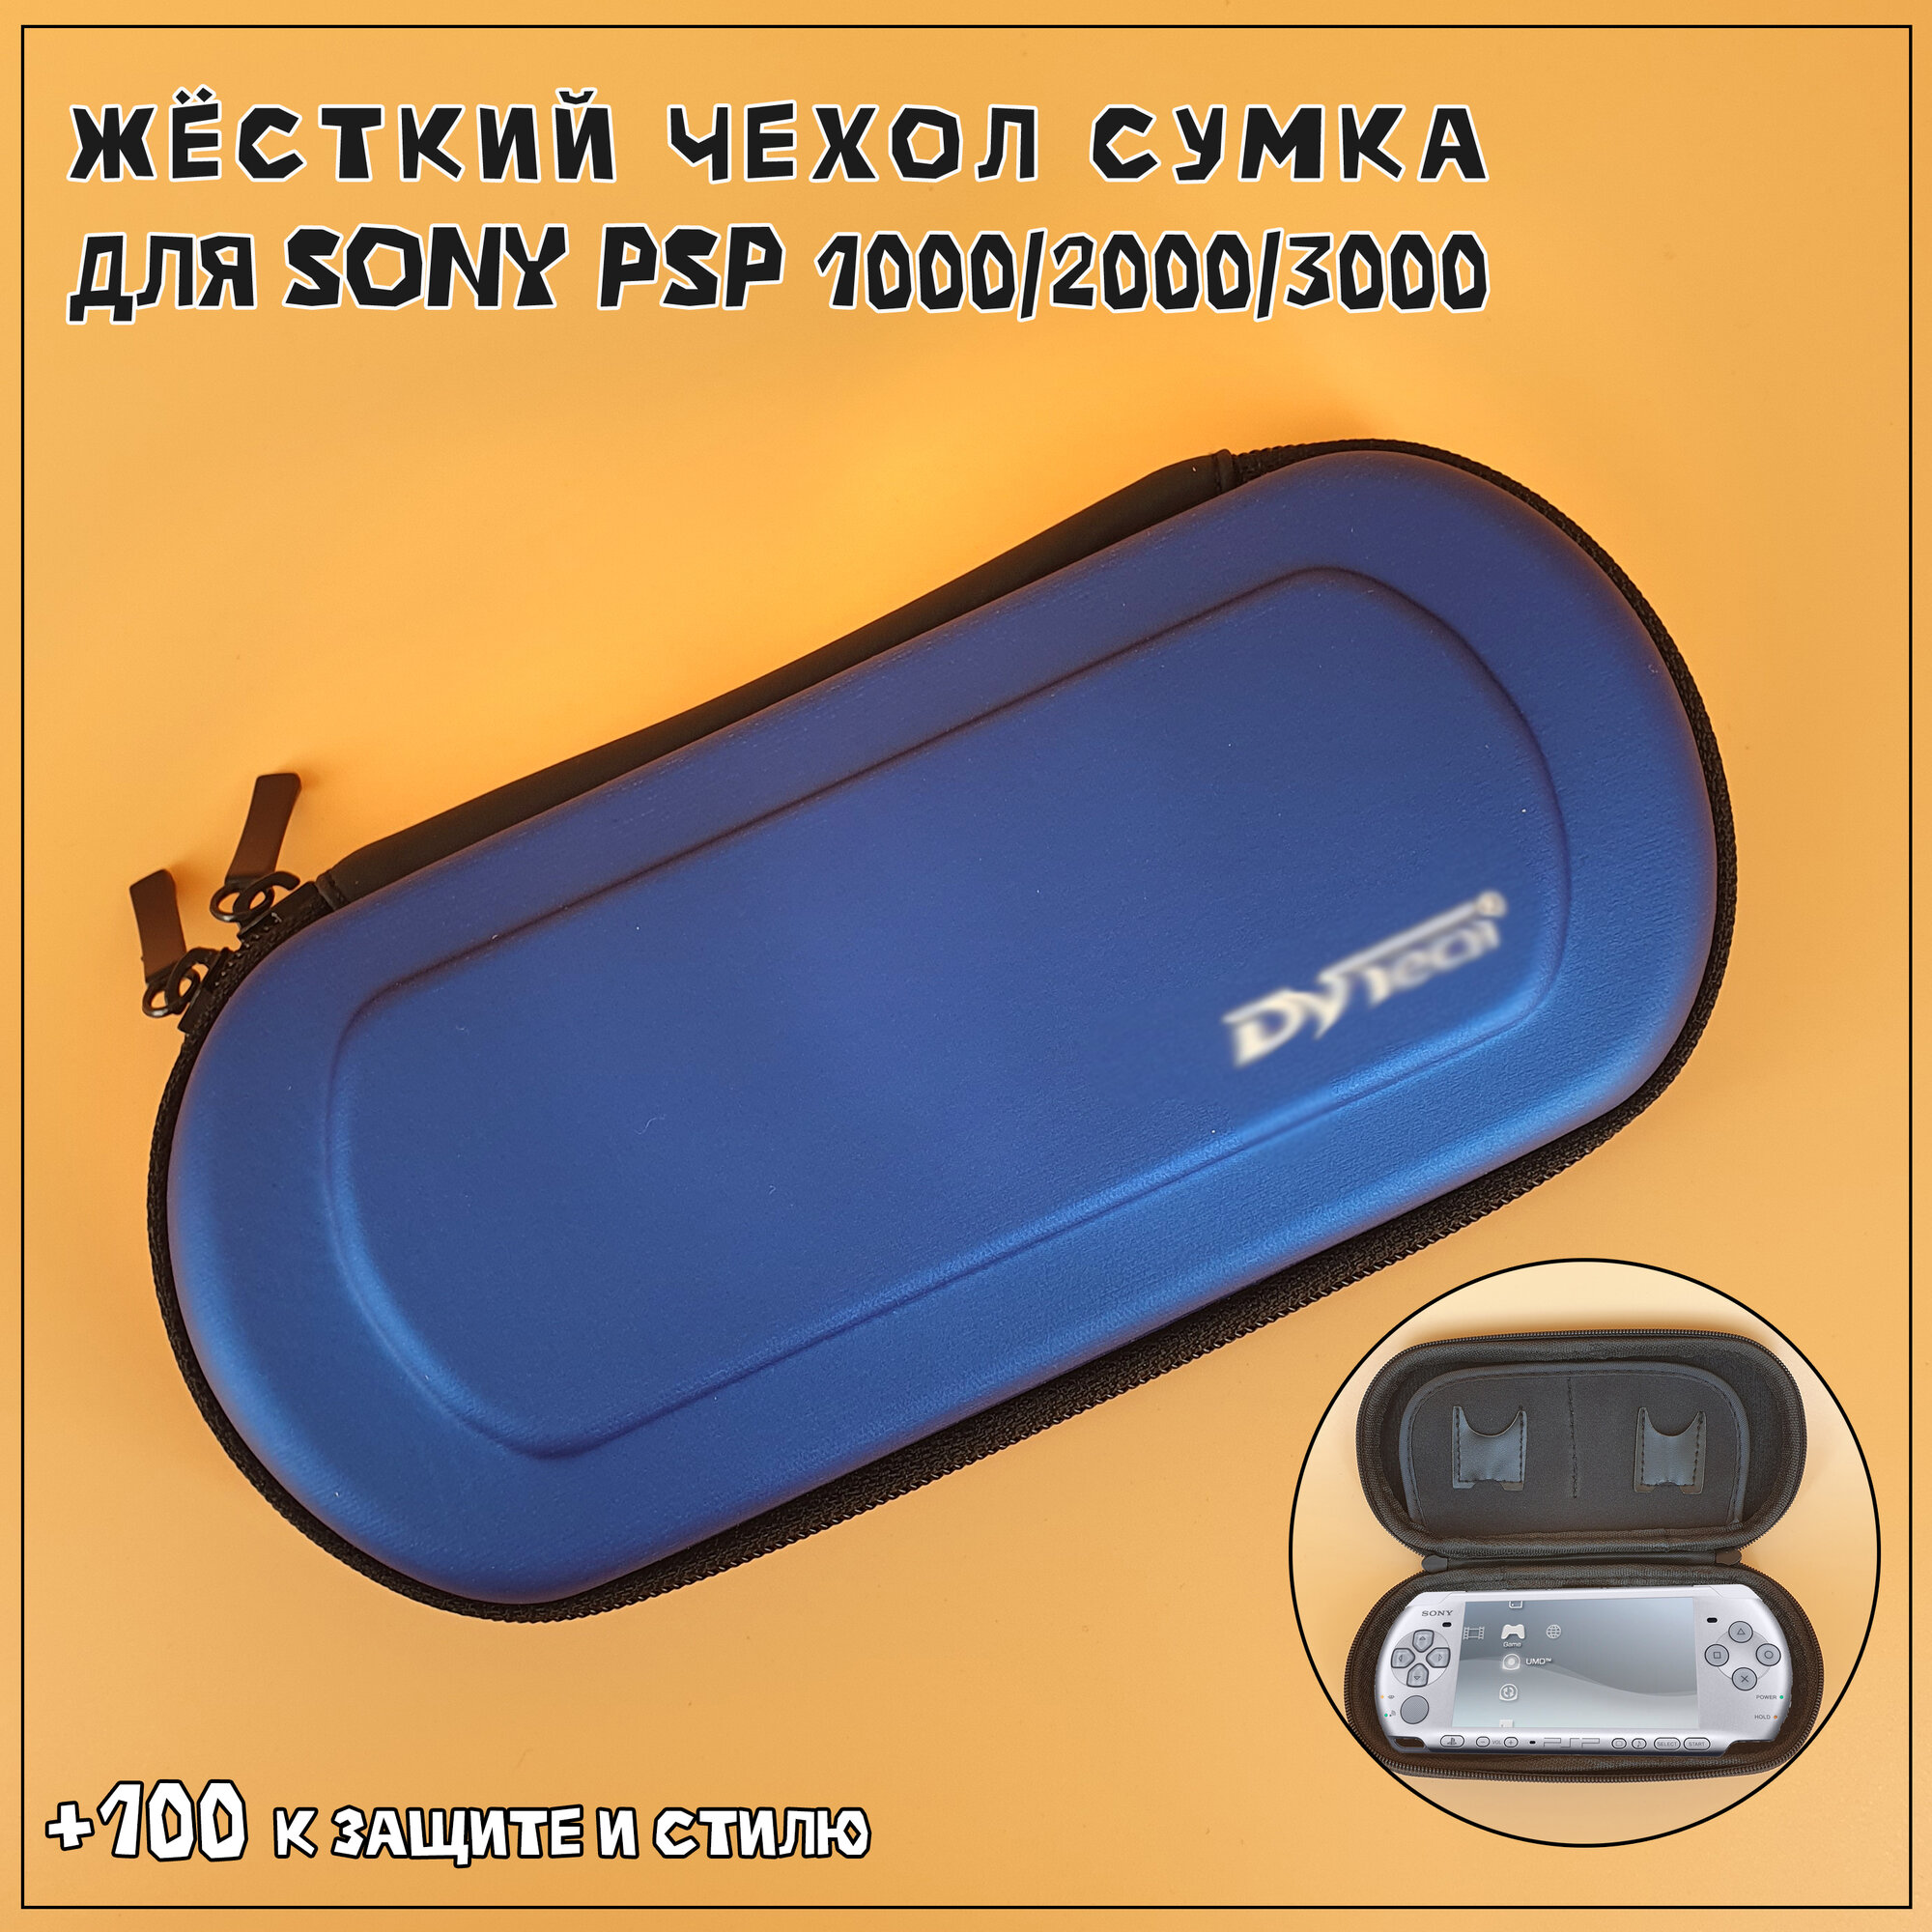 Чехол защитный для Sony PSP 1000/2000/3000, кейс для консоли и аксессуаров, на молнии, синий